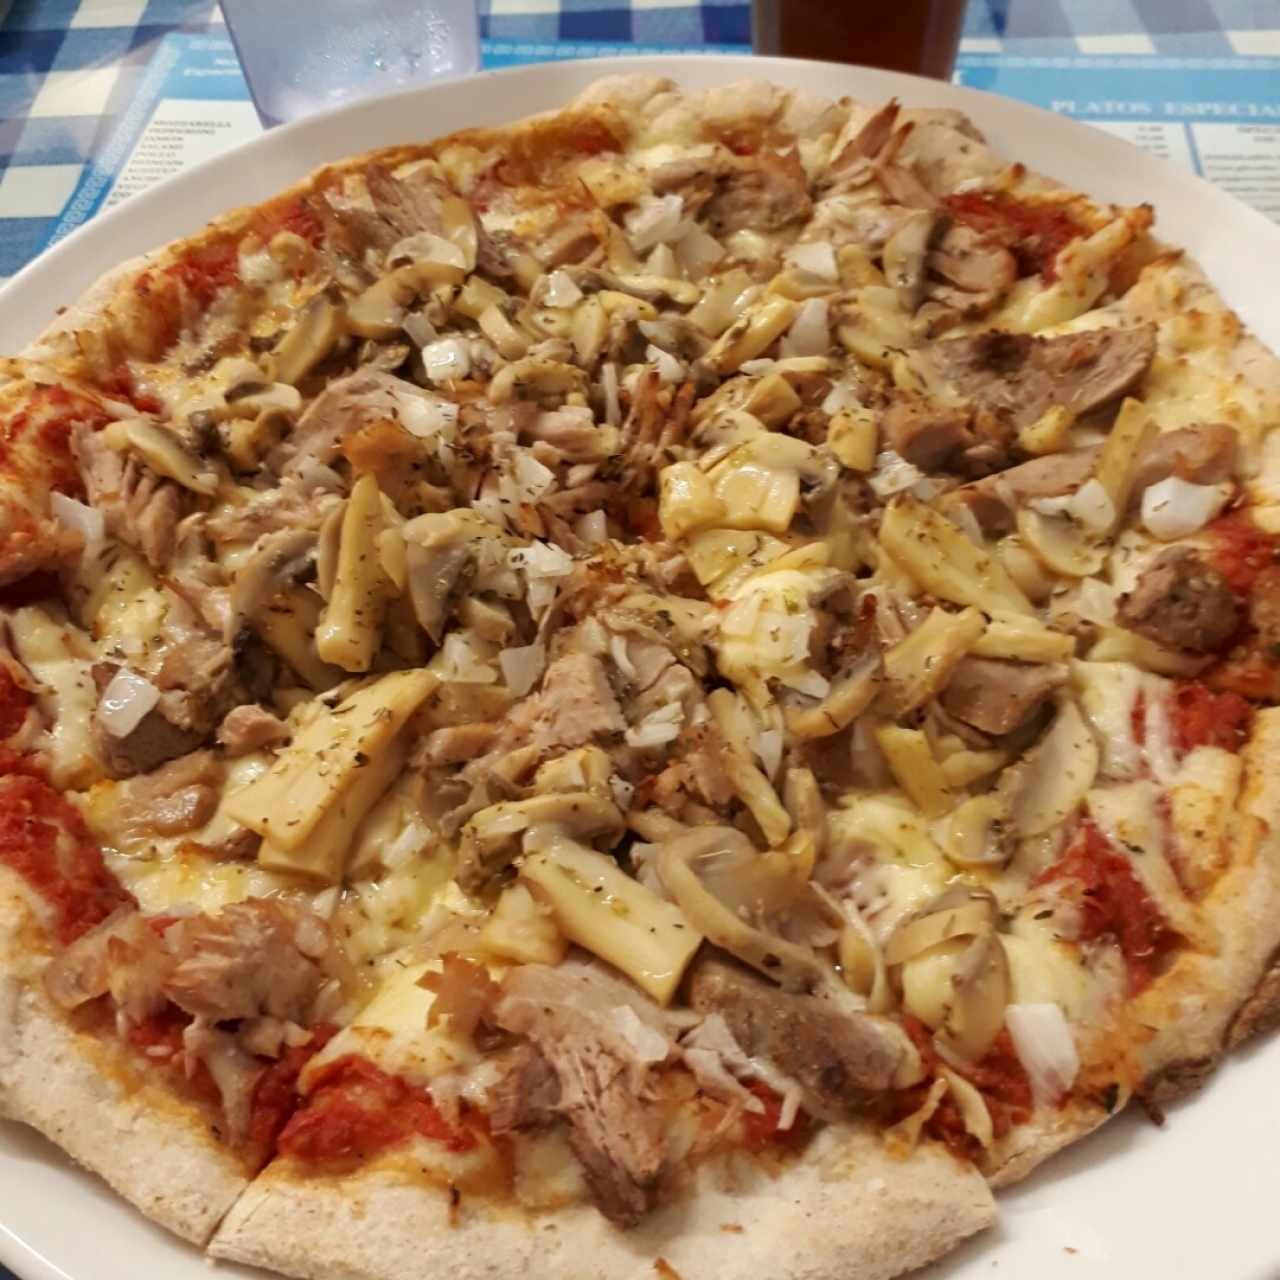 Pizza Athens (Pernil, cebolla y hongos)